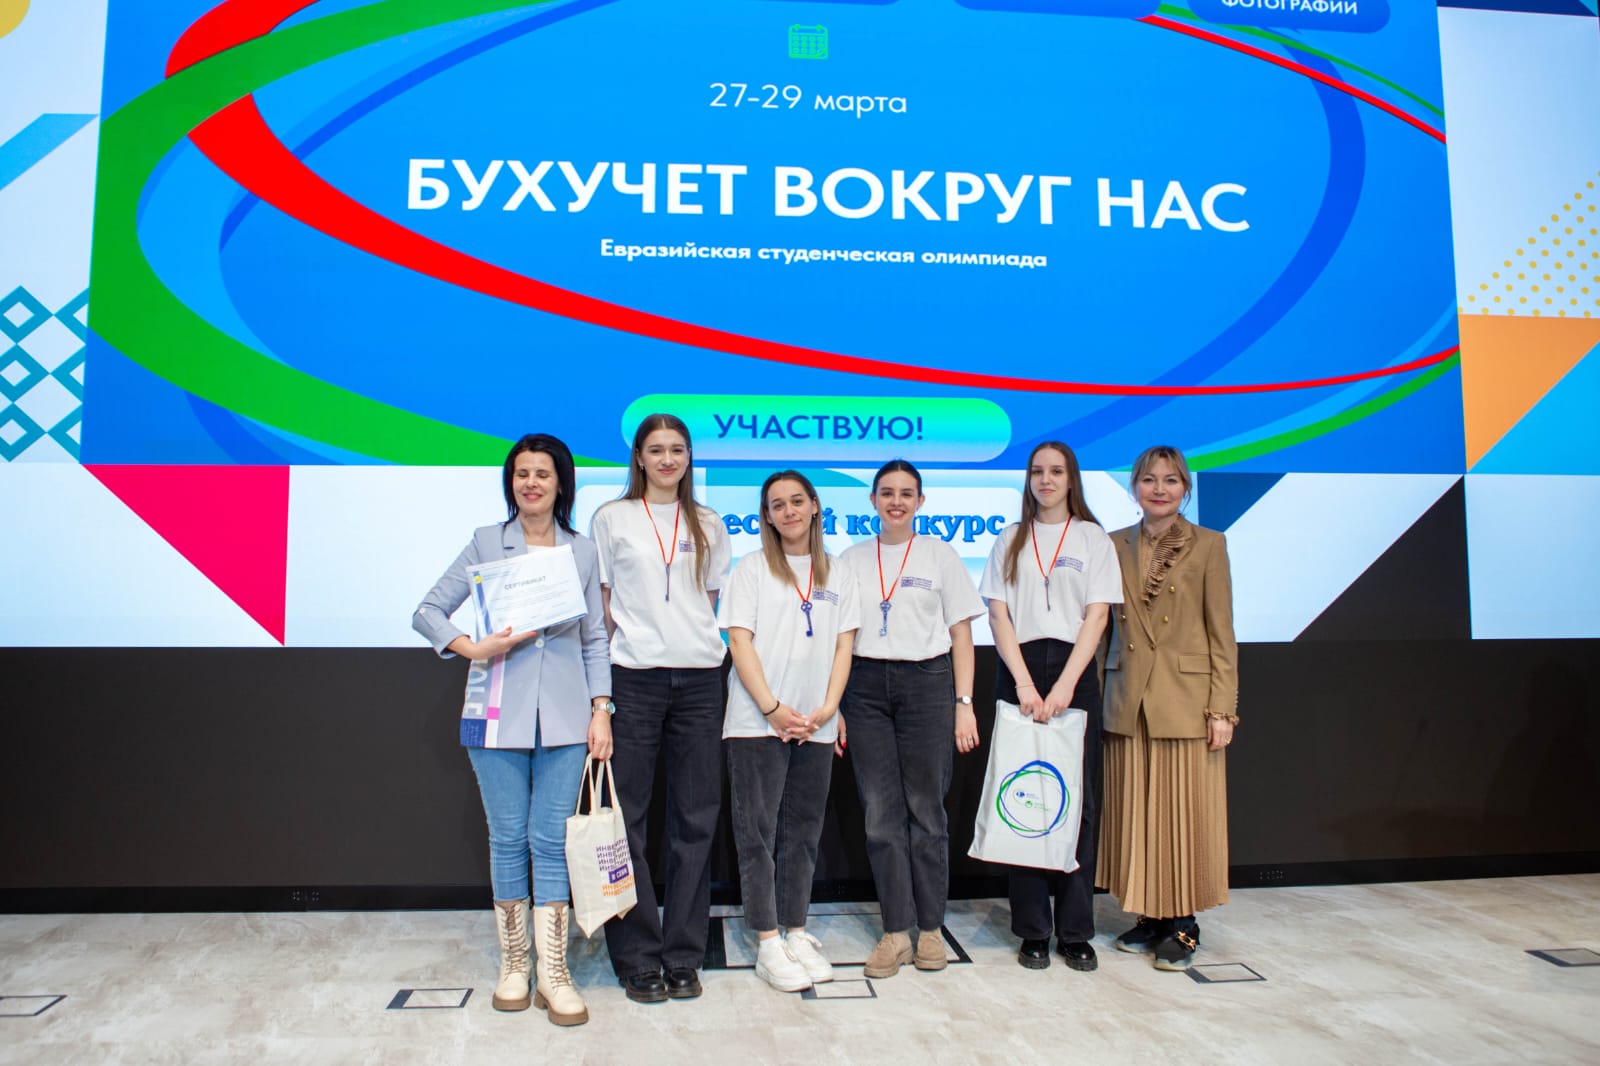 Студенты Державинского – призеры X Евразийской студенческой олимпиады «Бухучет вокруг нас» фото анонса